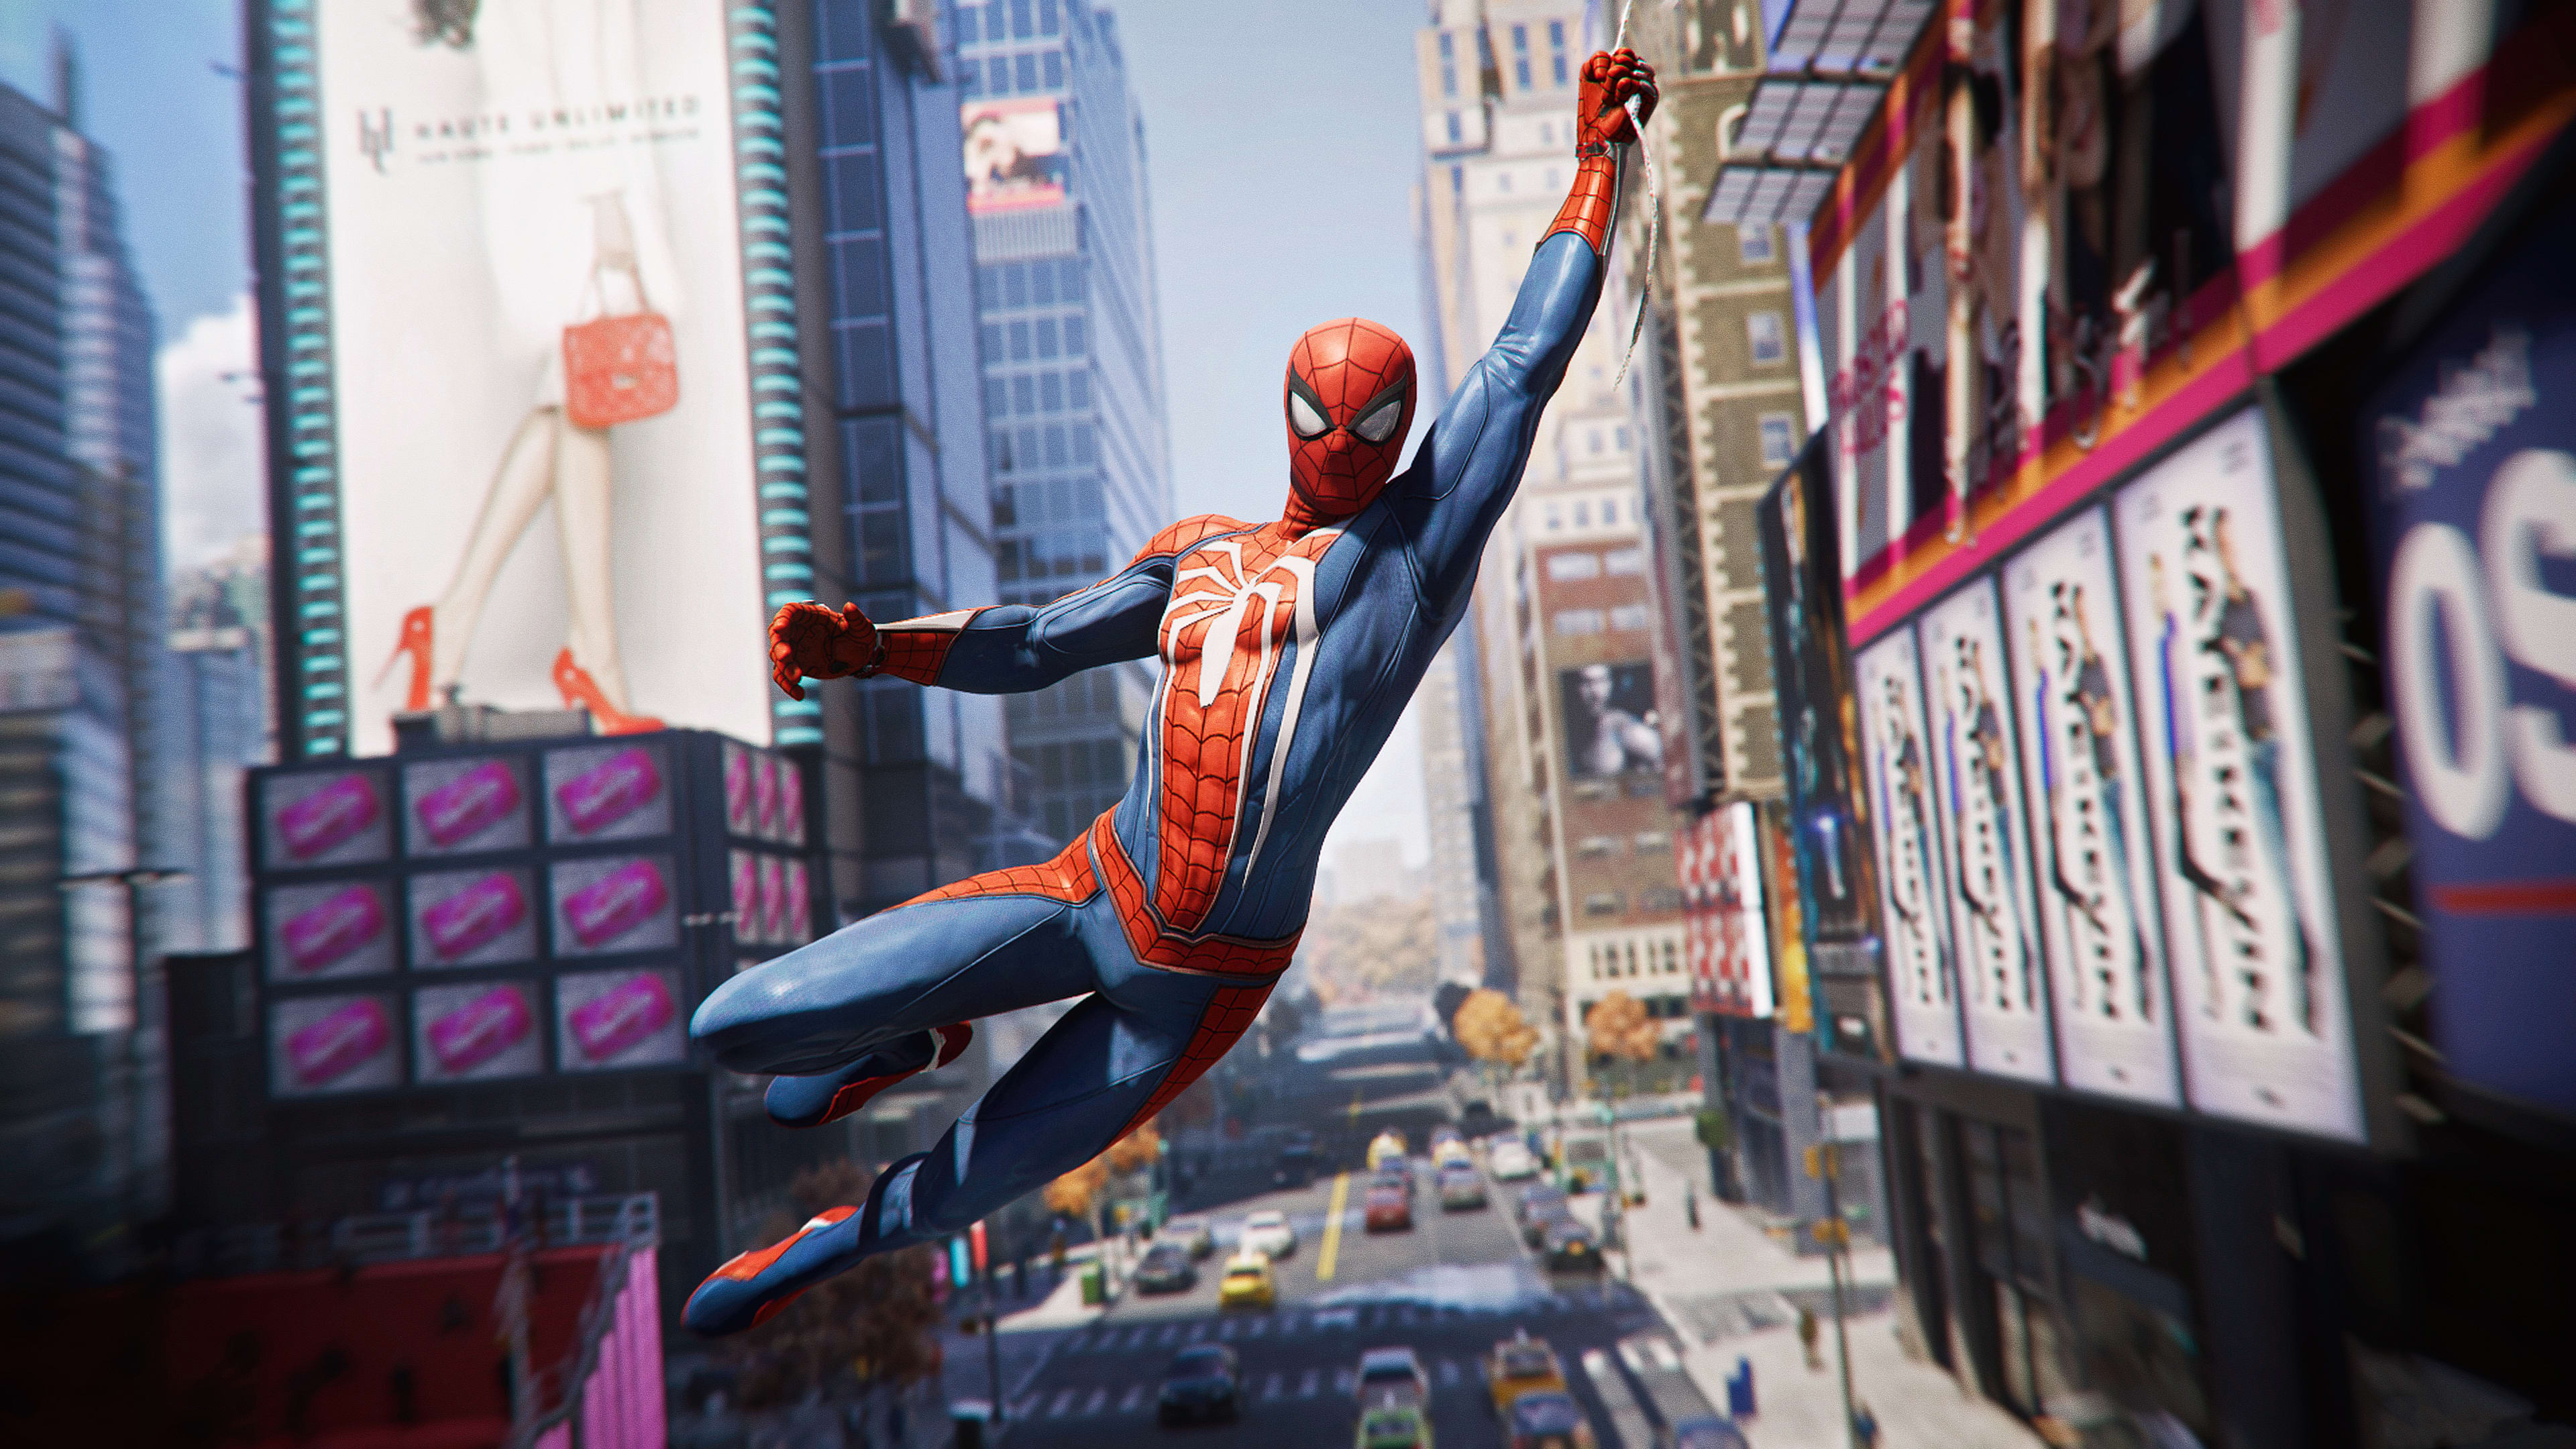 General 3840x2160 Marvel Comics Spider-Man (2018) Spider-Man screen shot Insomniac Games Marvel's Spider-Man New York City Manhattan